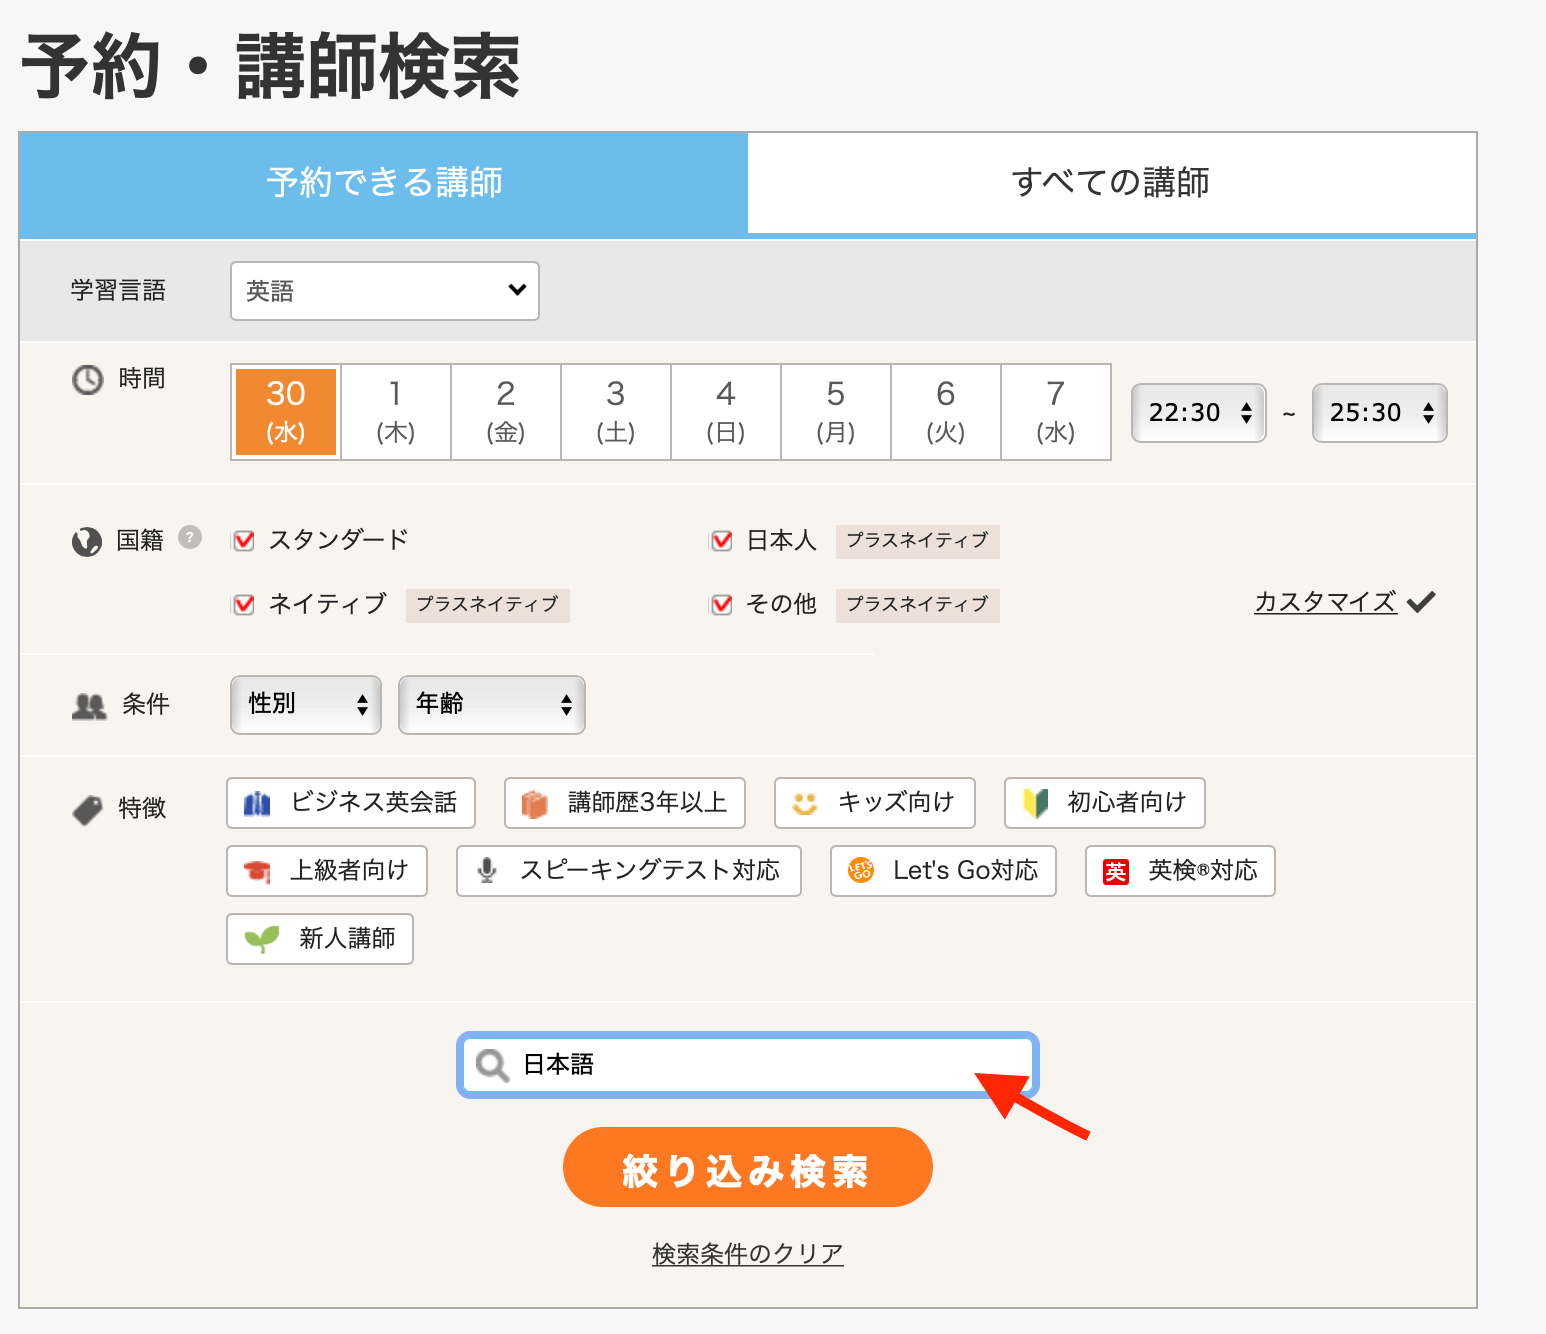 ▲DMM英会話・予約講師検索画面より　検索窓を利用して、日本語対応可能な講師を探すことが可能